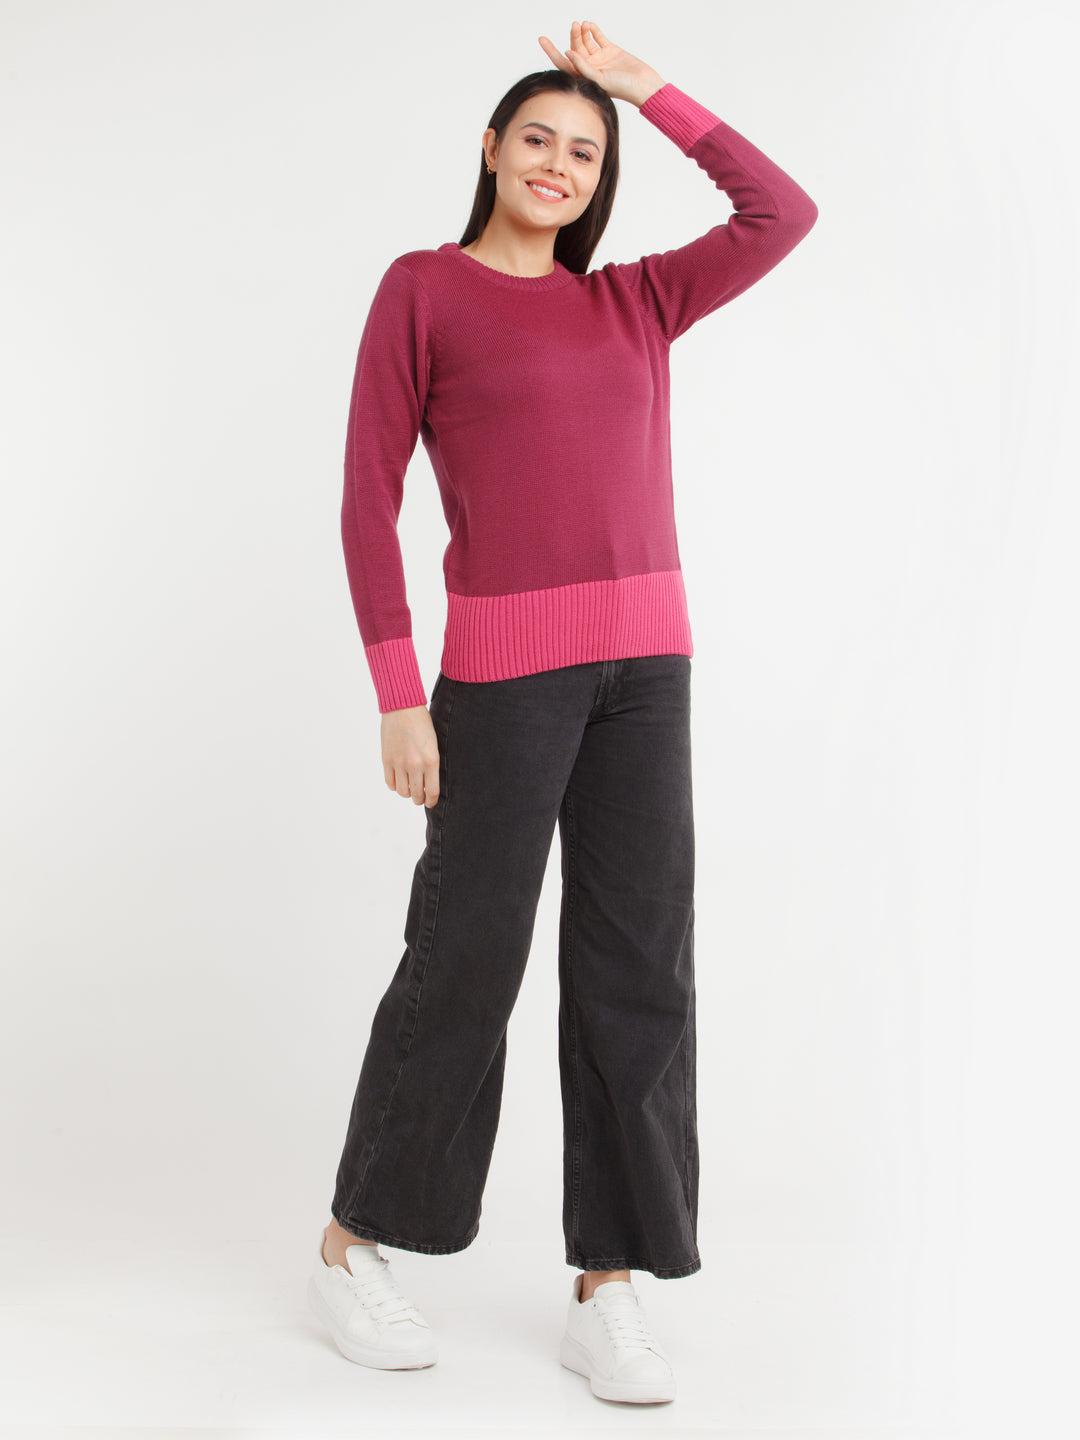 Purple Colorblock Sweater For Women By Zink London